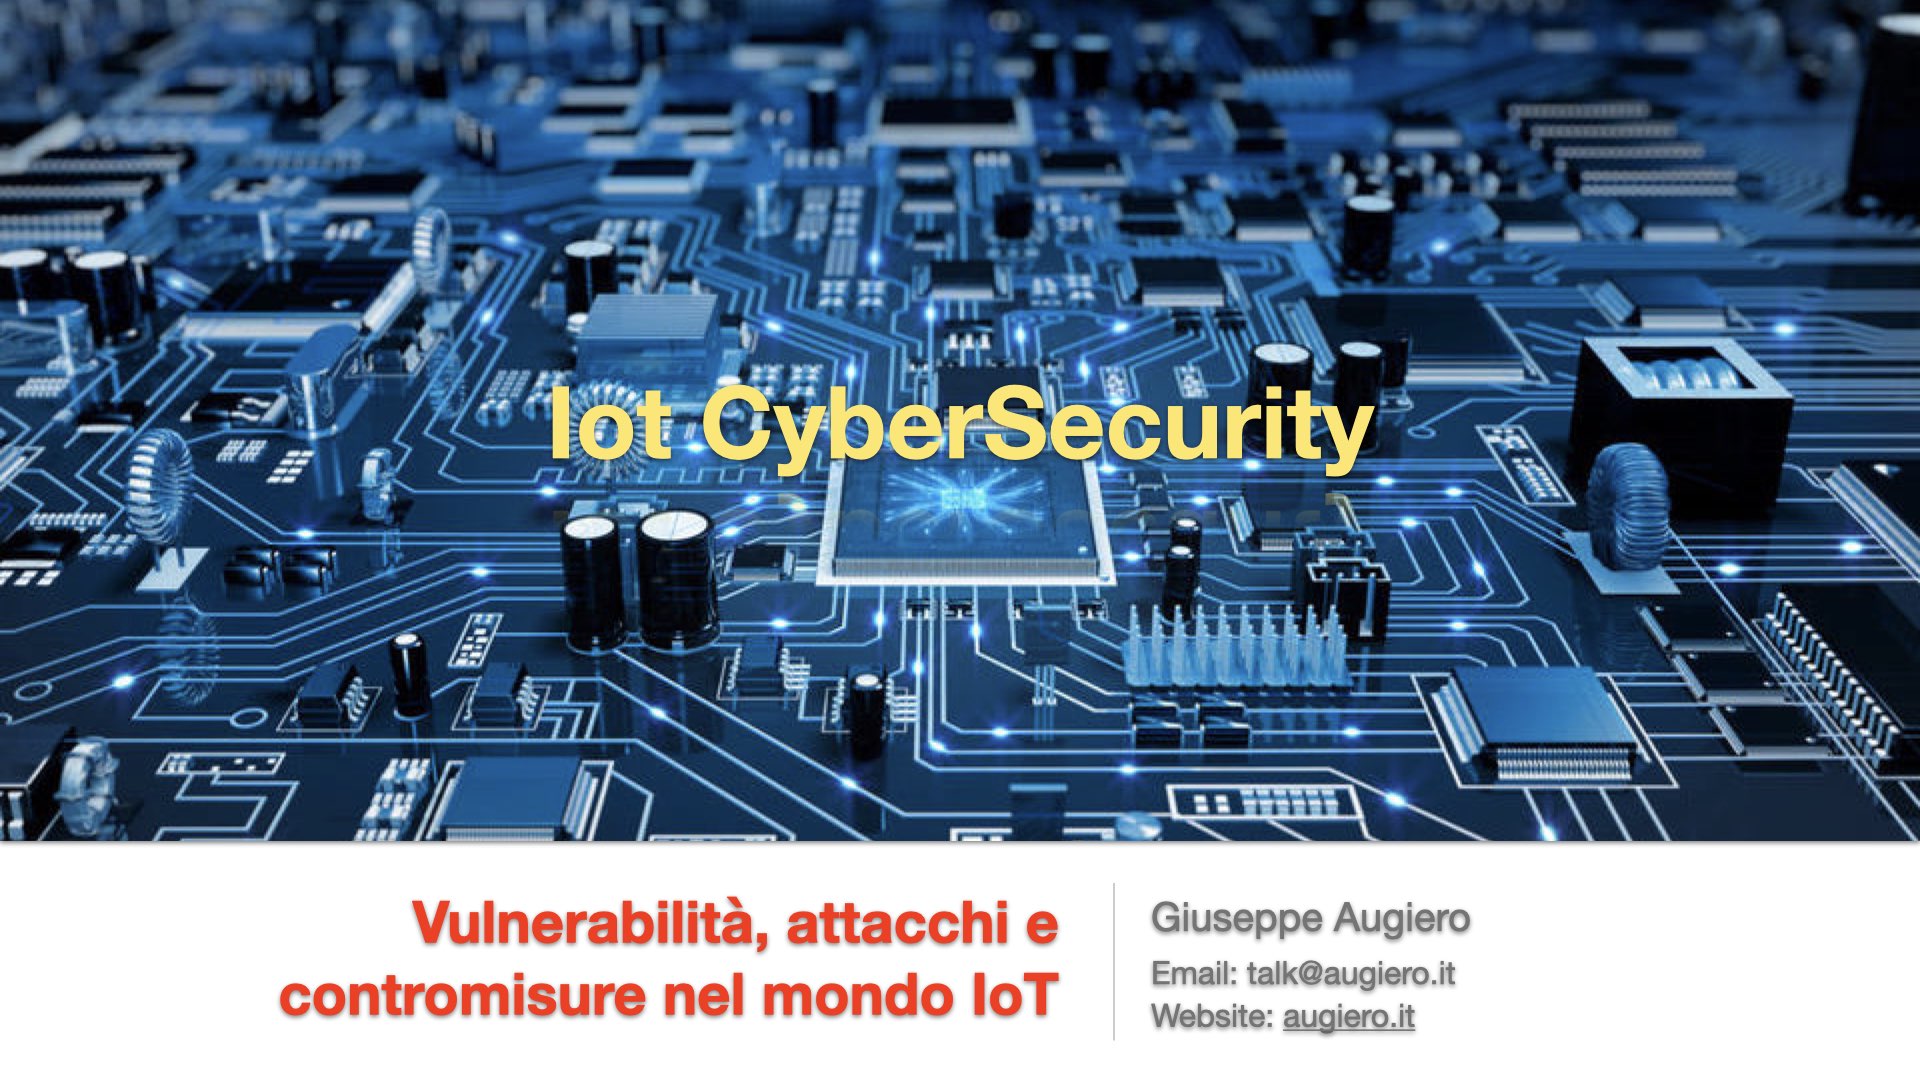 Slide “Vulnerabilità, attacchi e contromisure nel mondo IoT”